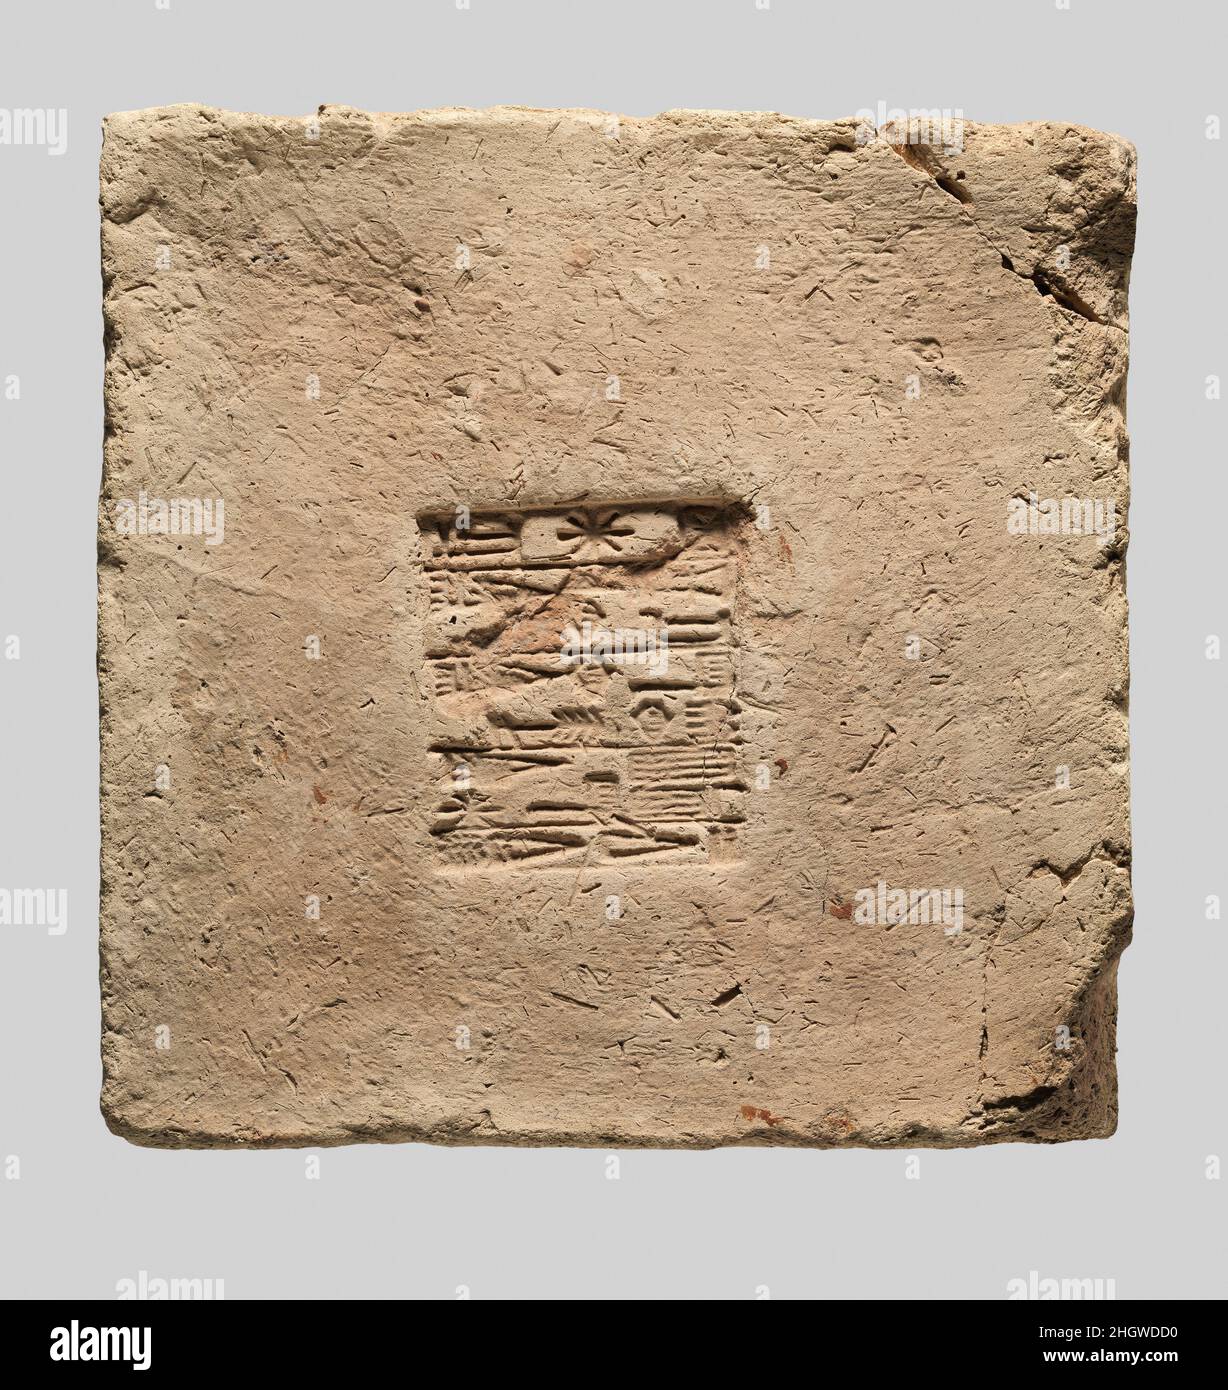 Brique inscrite ca.2112–2095 C.-B. Néo-sumérien cette brique de céramique a été trouvée lors des fouilles de Nippur, la capitale religieuse de la Mésopotamie dans le troisième et début du deuxième millénaire C.-B. Nippur a été la maison d'Enlil, le Dieu principal du panthéon.Les dirigeants d'autres villes mésopotamiennes ont cherché à promouvoir leur royauté et à obtenir la faveur de ce dieu en maintenant, en réparant et parfois en reconstruisant son temple, l'Ekur.La réparation d'un temple a créé l'occasion pour un dirigeant d'enterrer sa propre inscription à l'intérieur des murs, laissant un disque pour les générations futures.la brique est estampillée d'un inscripti Banque D'Images